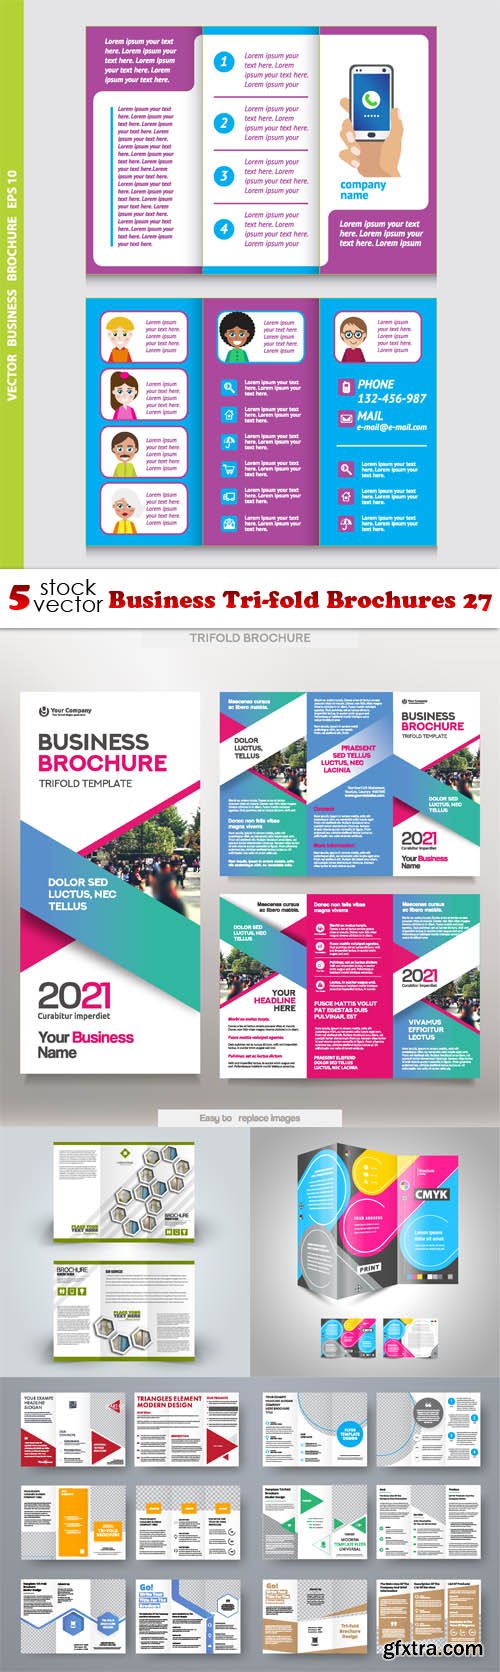 Vectors - Business Tri-fold Brochures 27